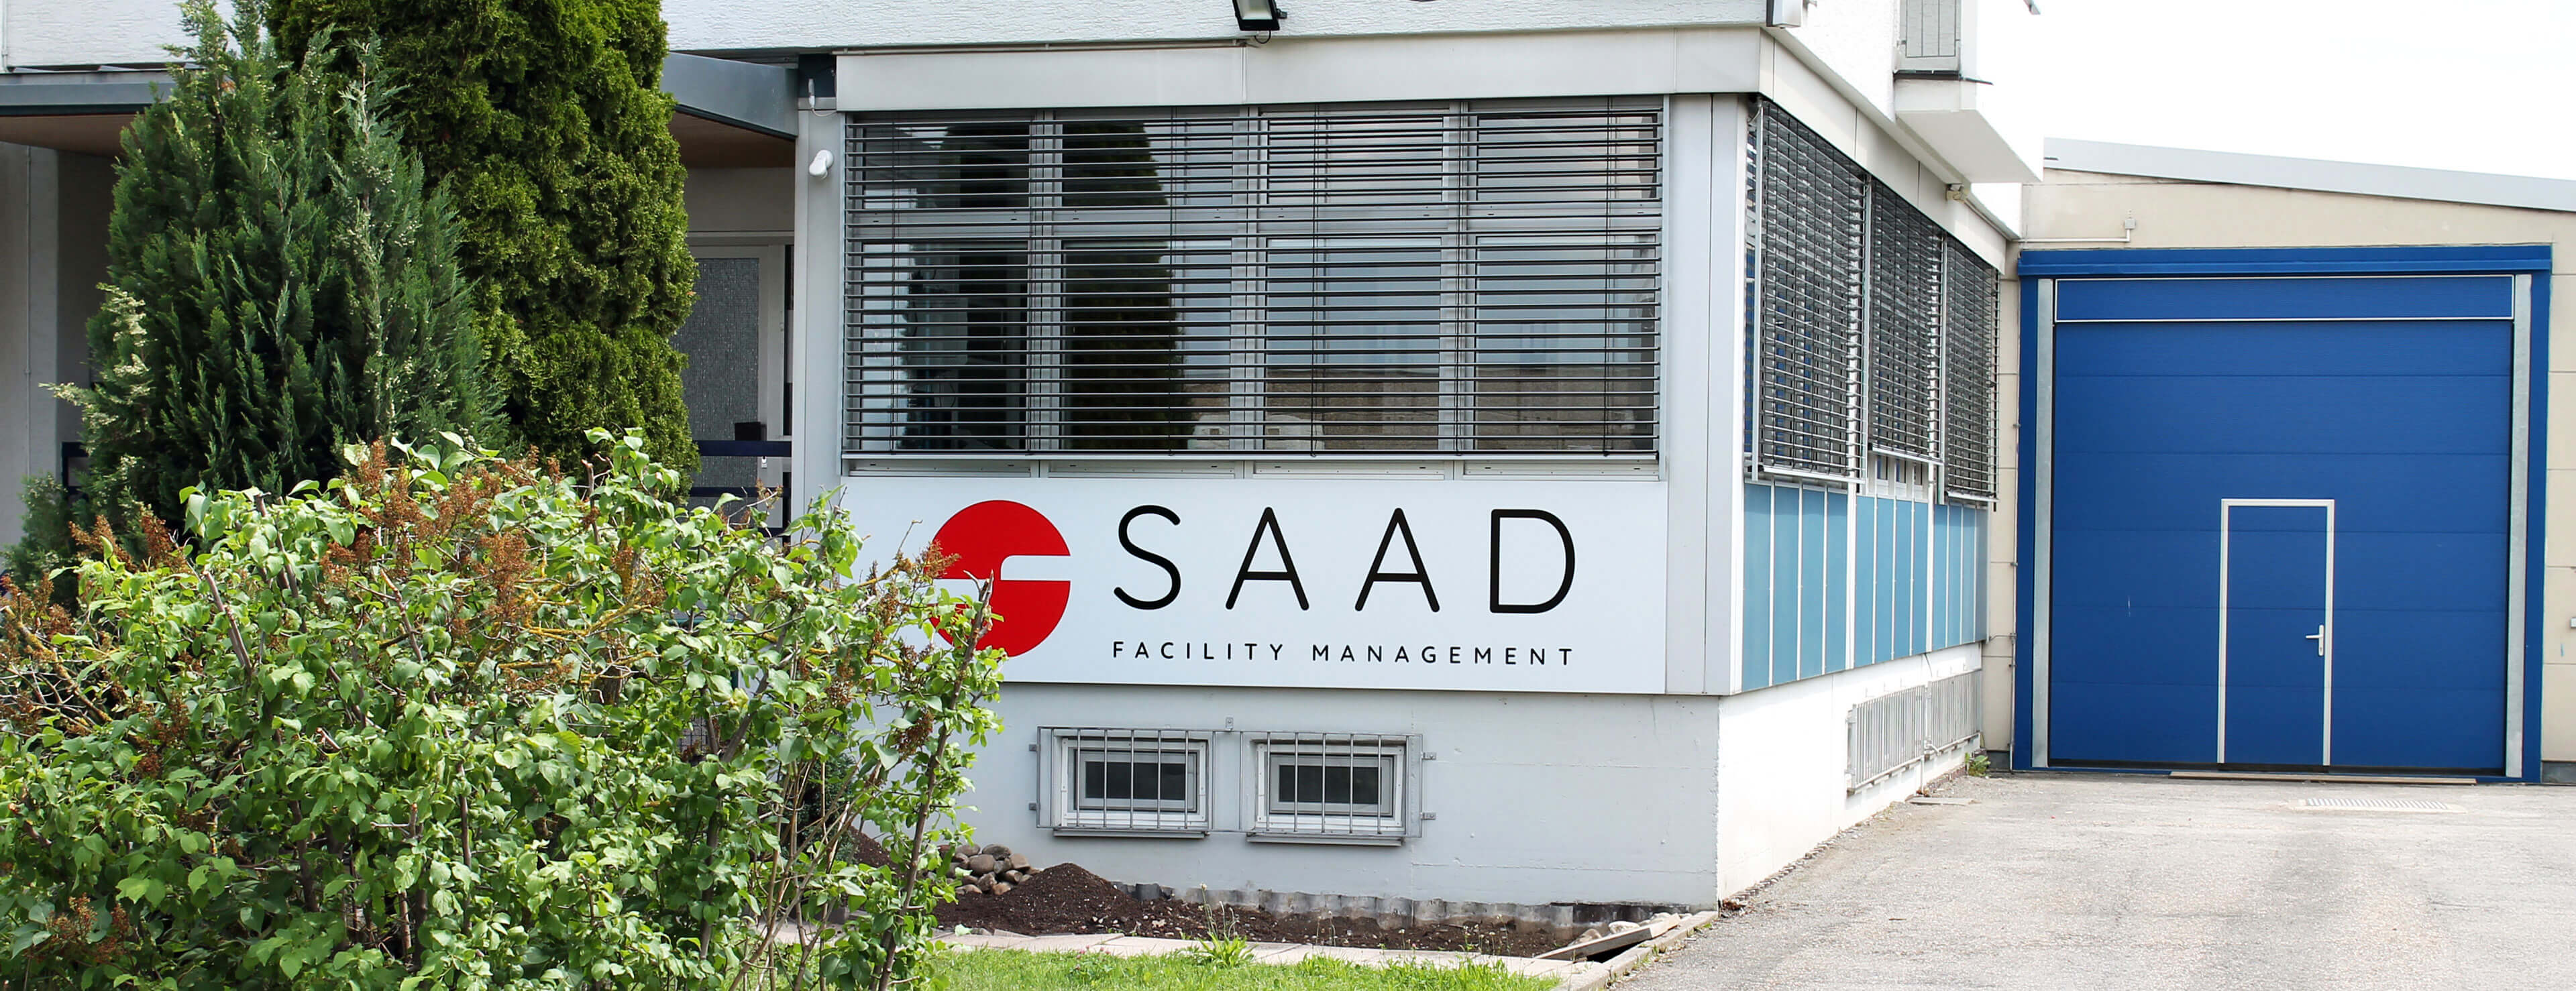 Ein Bild vom Eingangsbereich des Gebäudes der SAAD Facility Management GmbH.